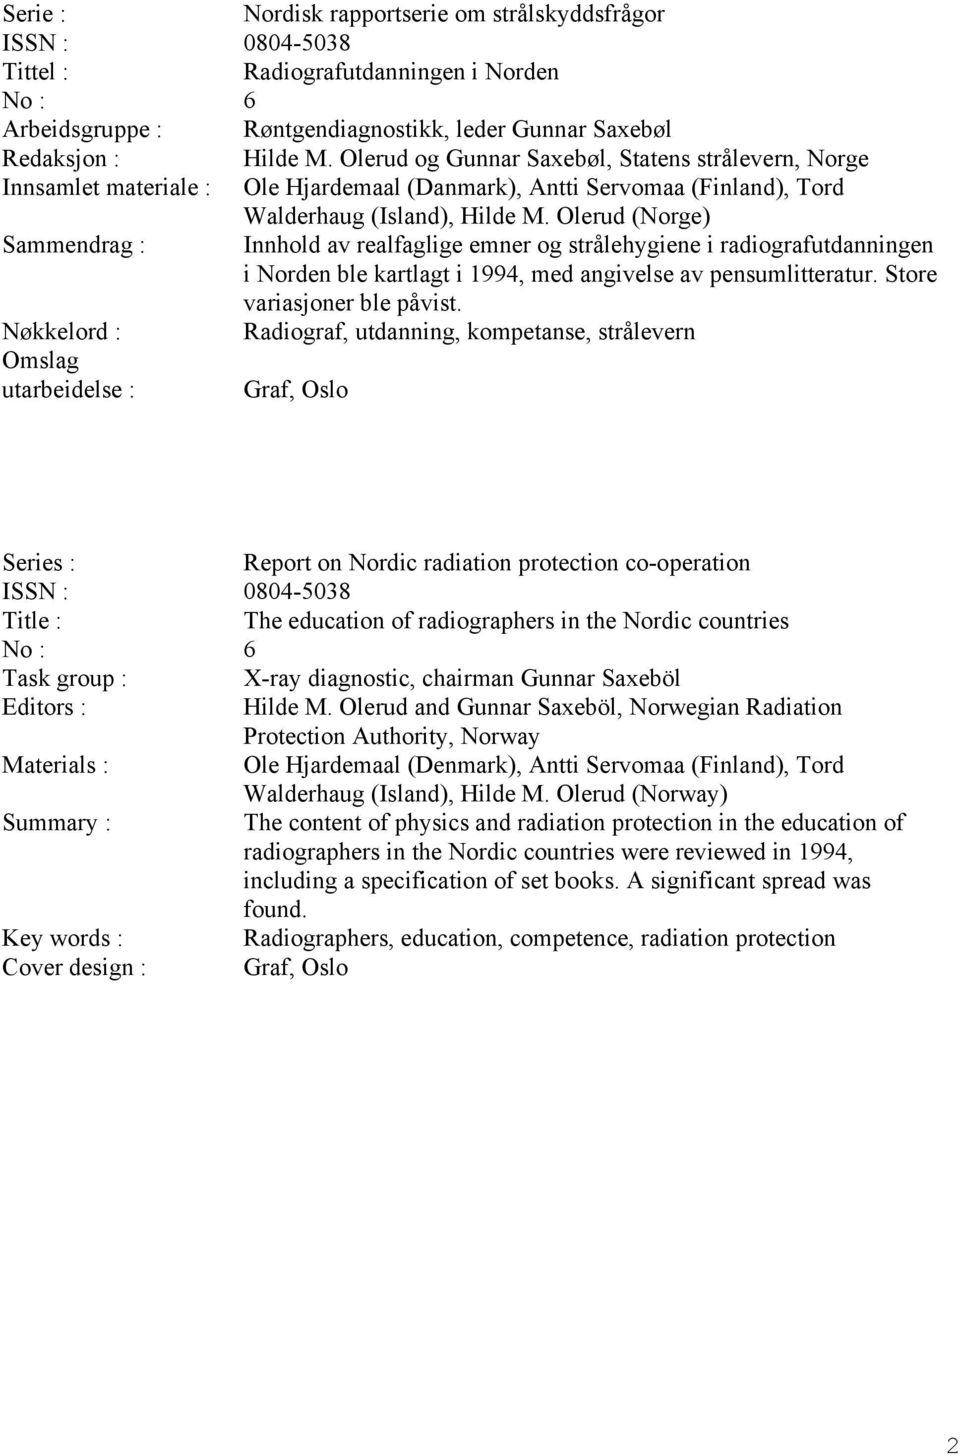 Olerud (Norge) Sammendrag : Innhold av realfaglige emner og strålehygiene i radiografutdanningen i Norden ble kartlagt i 1994, med angivelse av pensumlitteratur. Store variasjoner ble påvist.